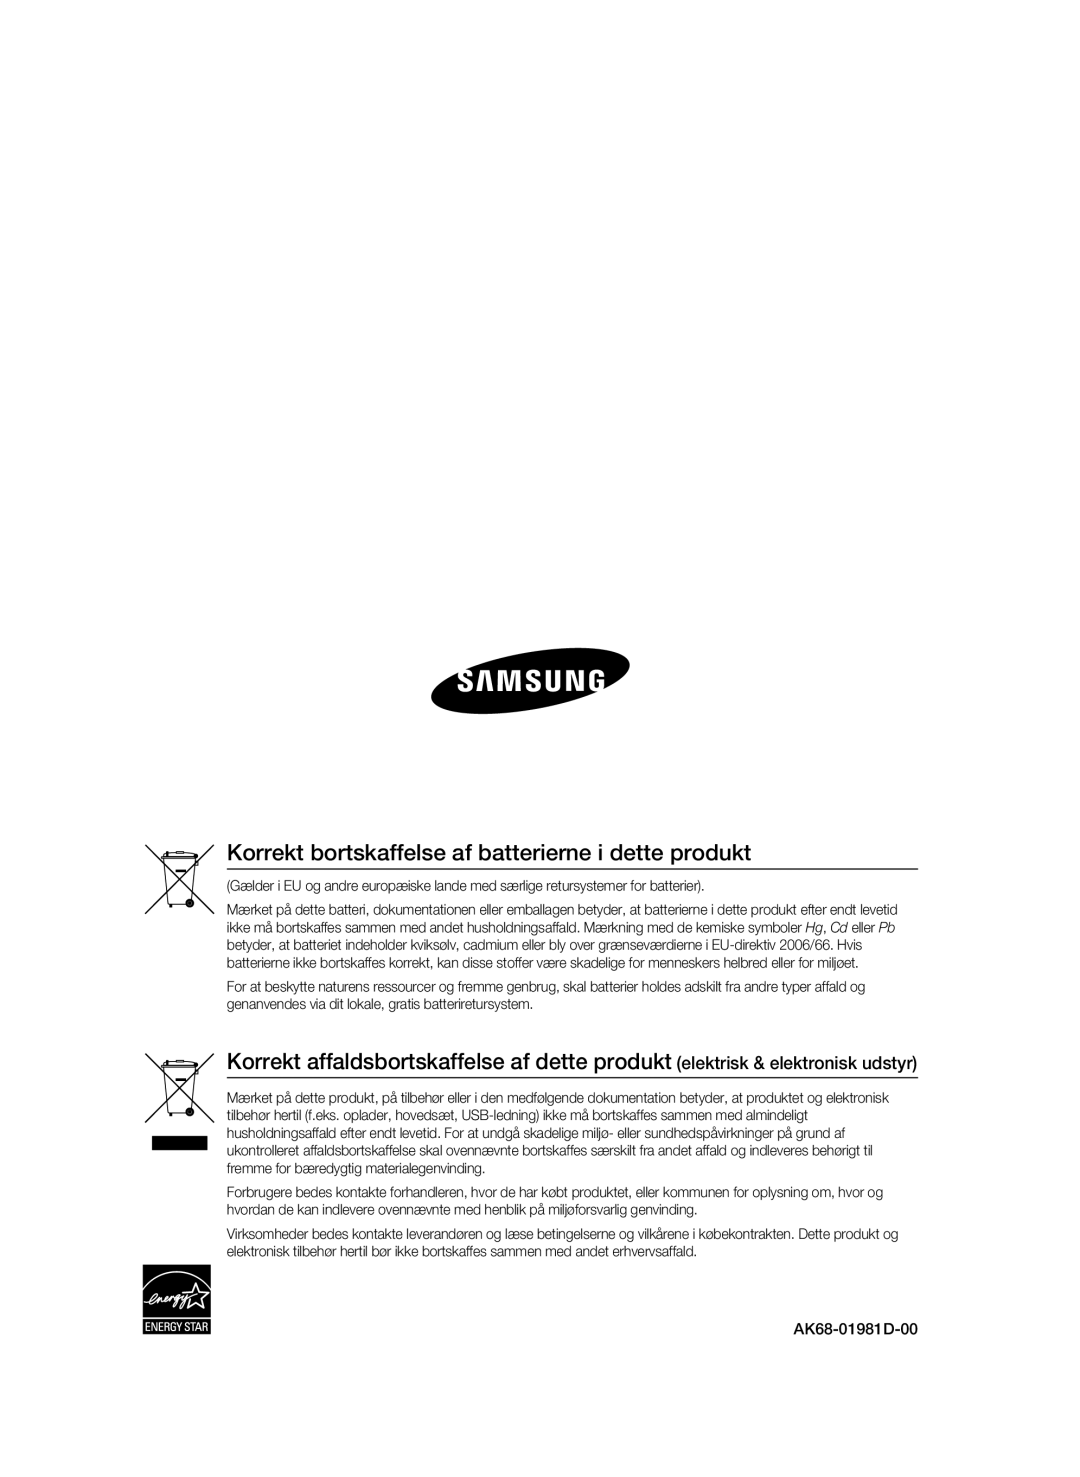 Samsung BD-C7500W/XEE manual Korrekt bortskaffelse af batterierne i dette produkt, AK68-01981D-00 